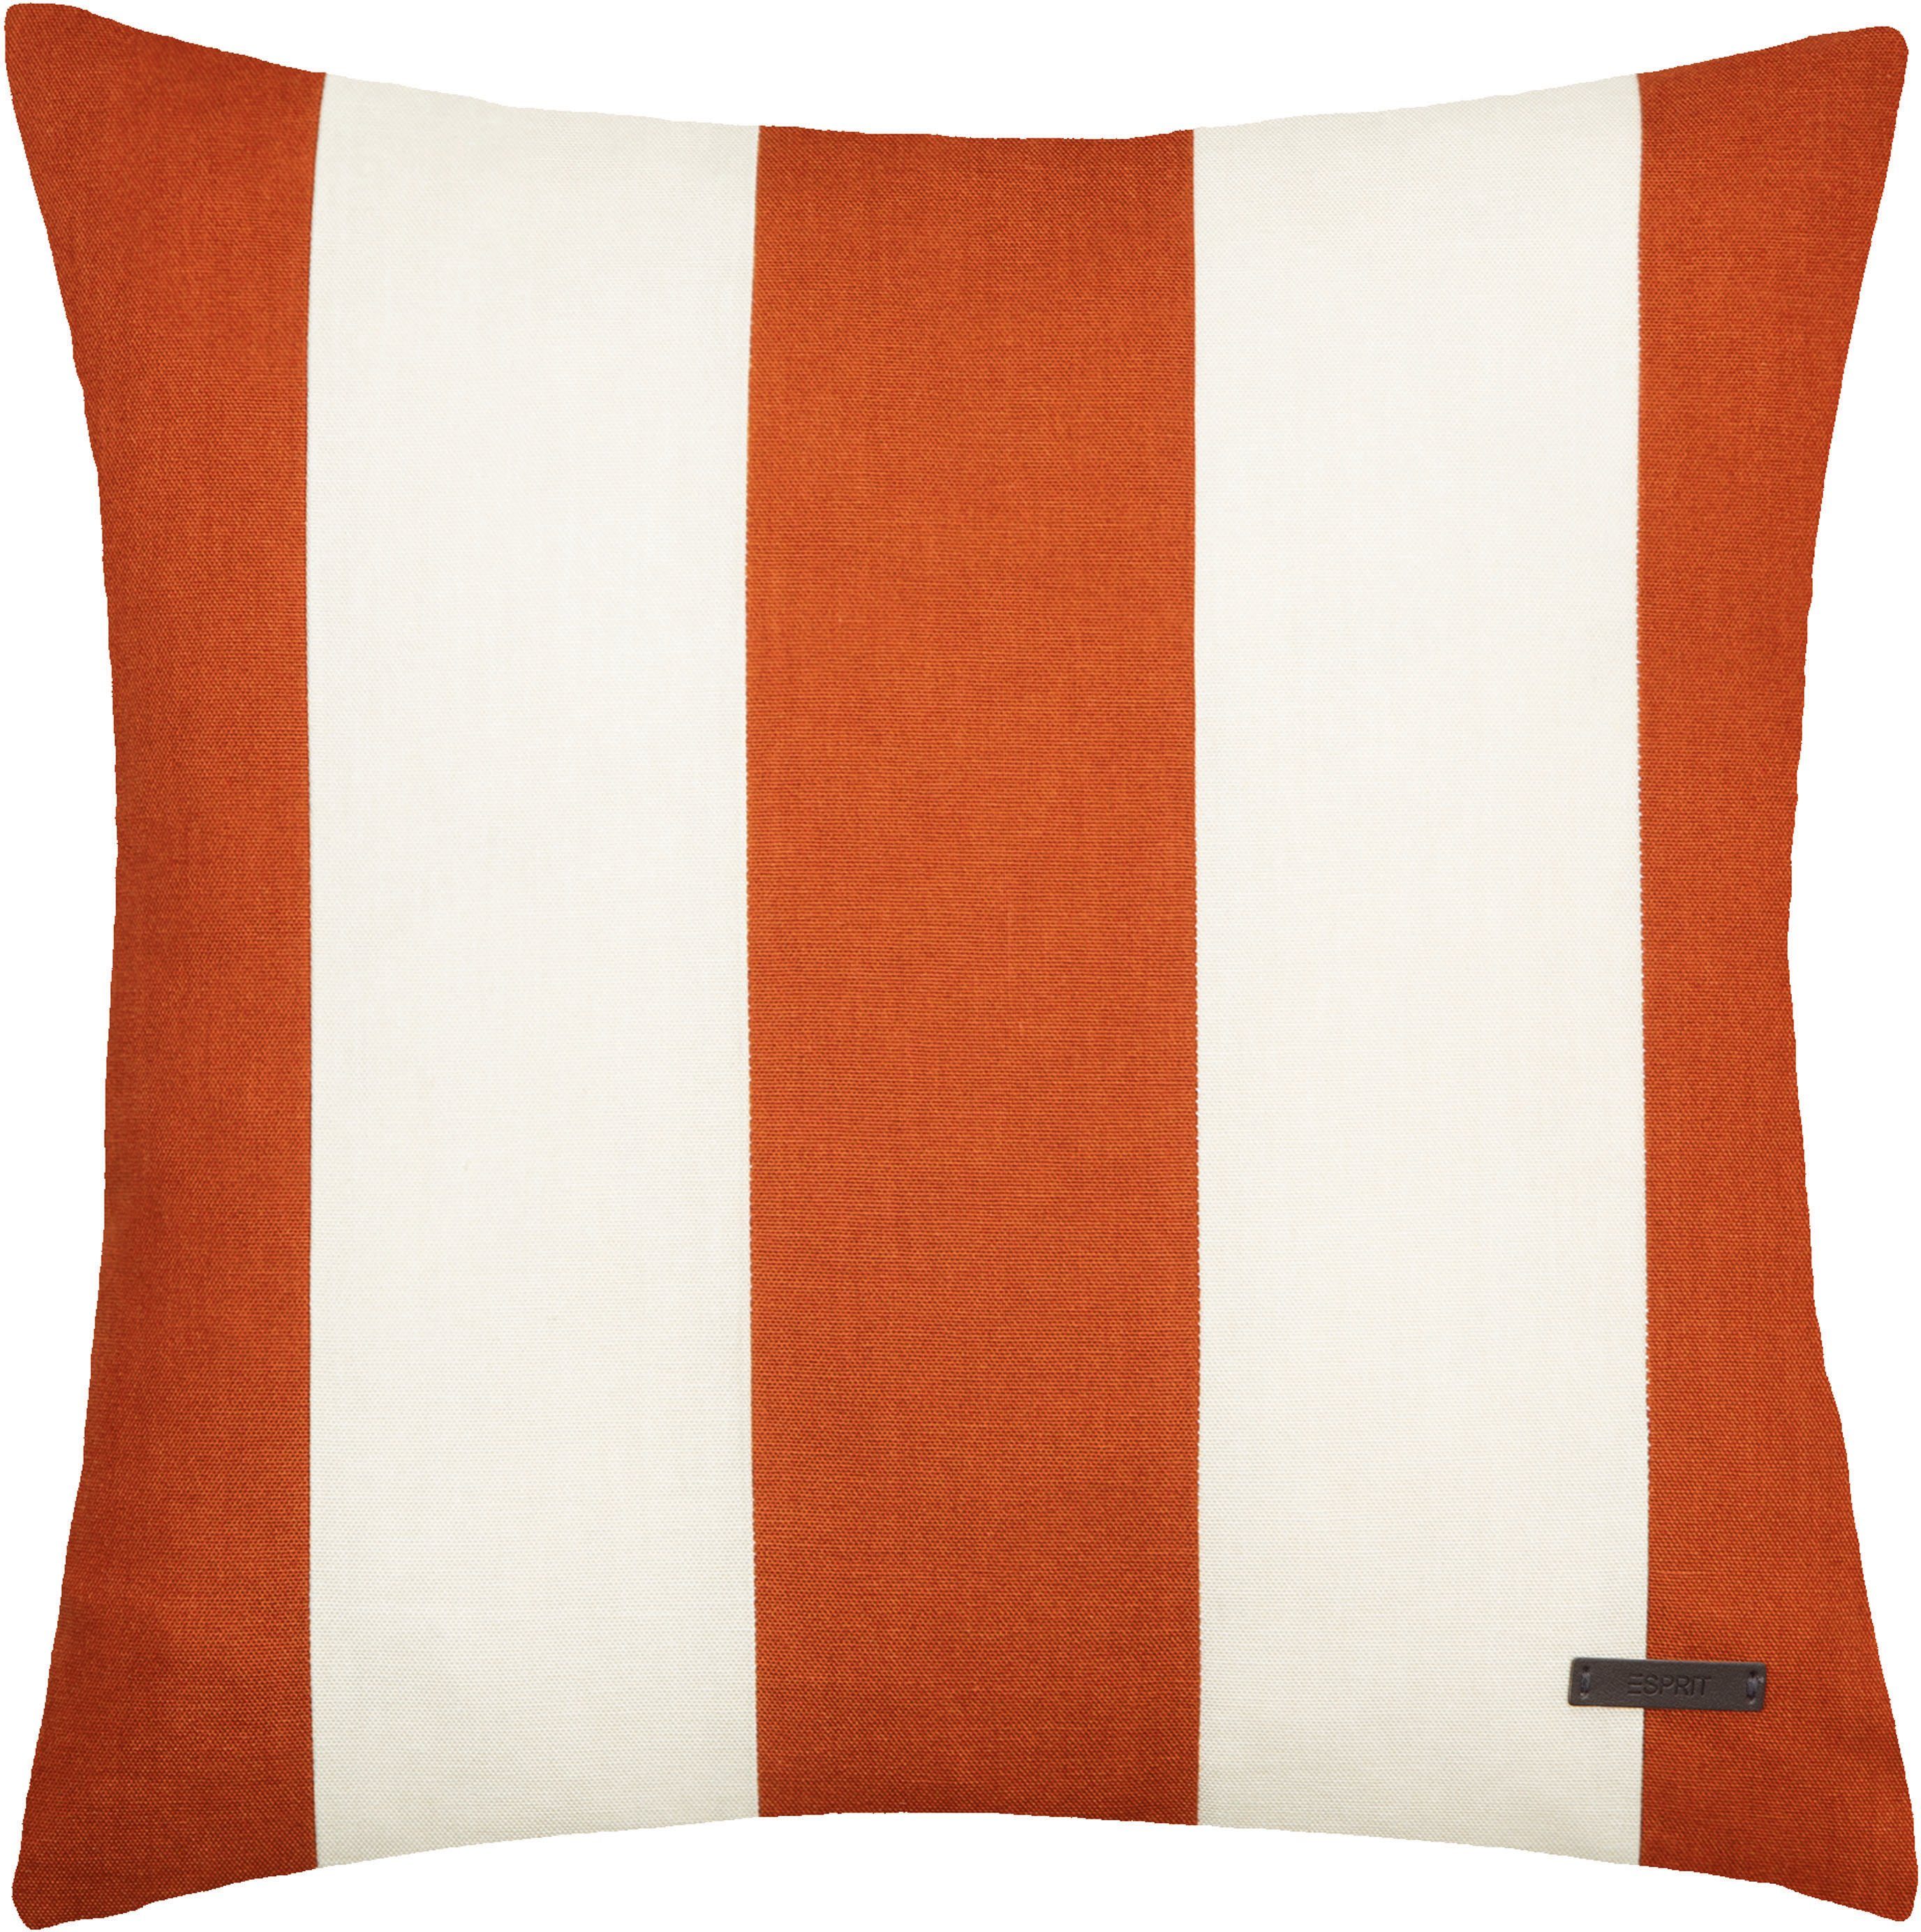 Esprit Dekokissen Neo Stripe, mit Streifen, Kissenhülle ohne Füllung, 1 Stück bronzefarben/zimt/orange